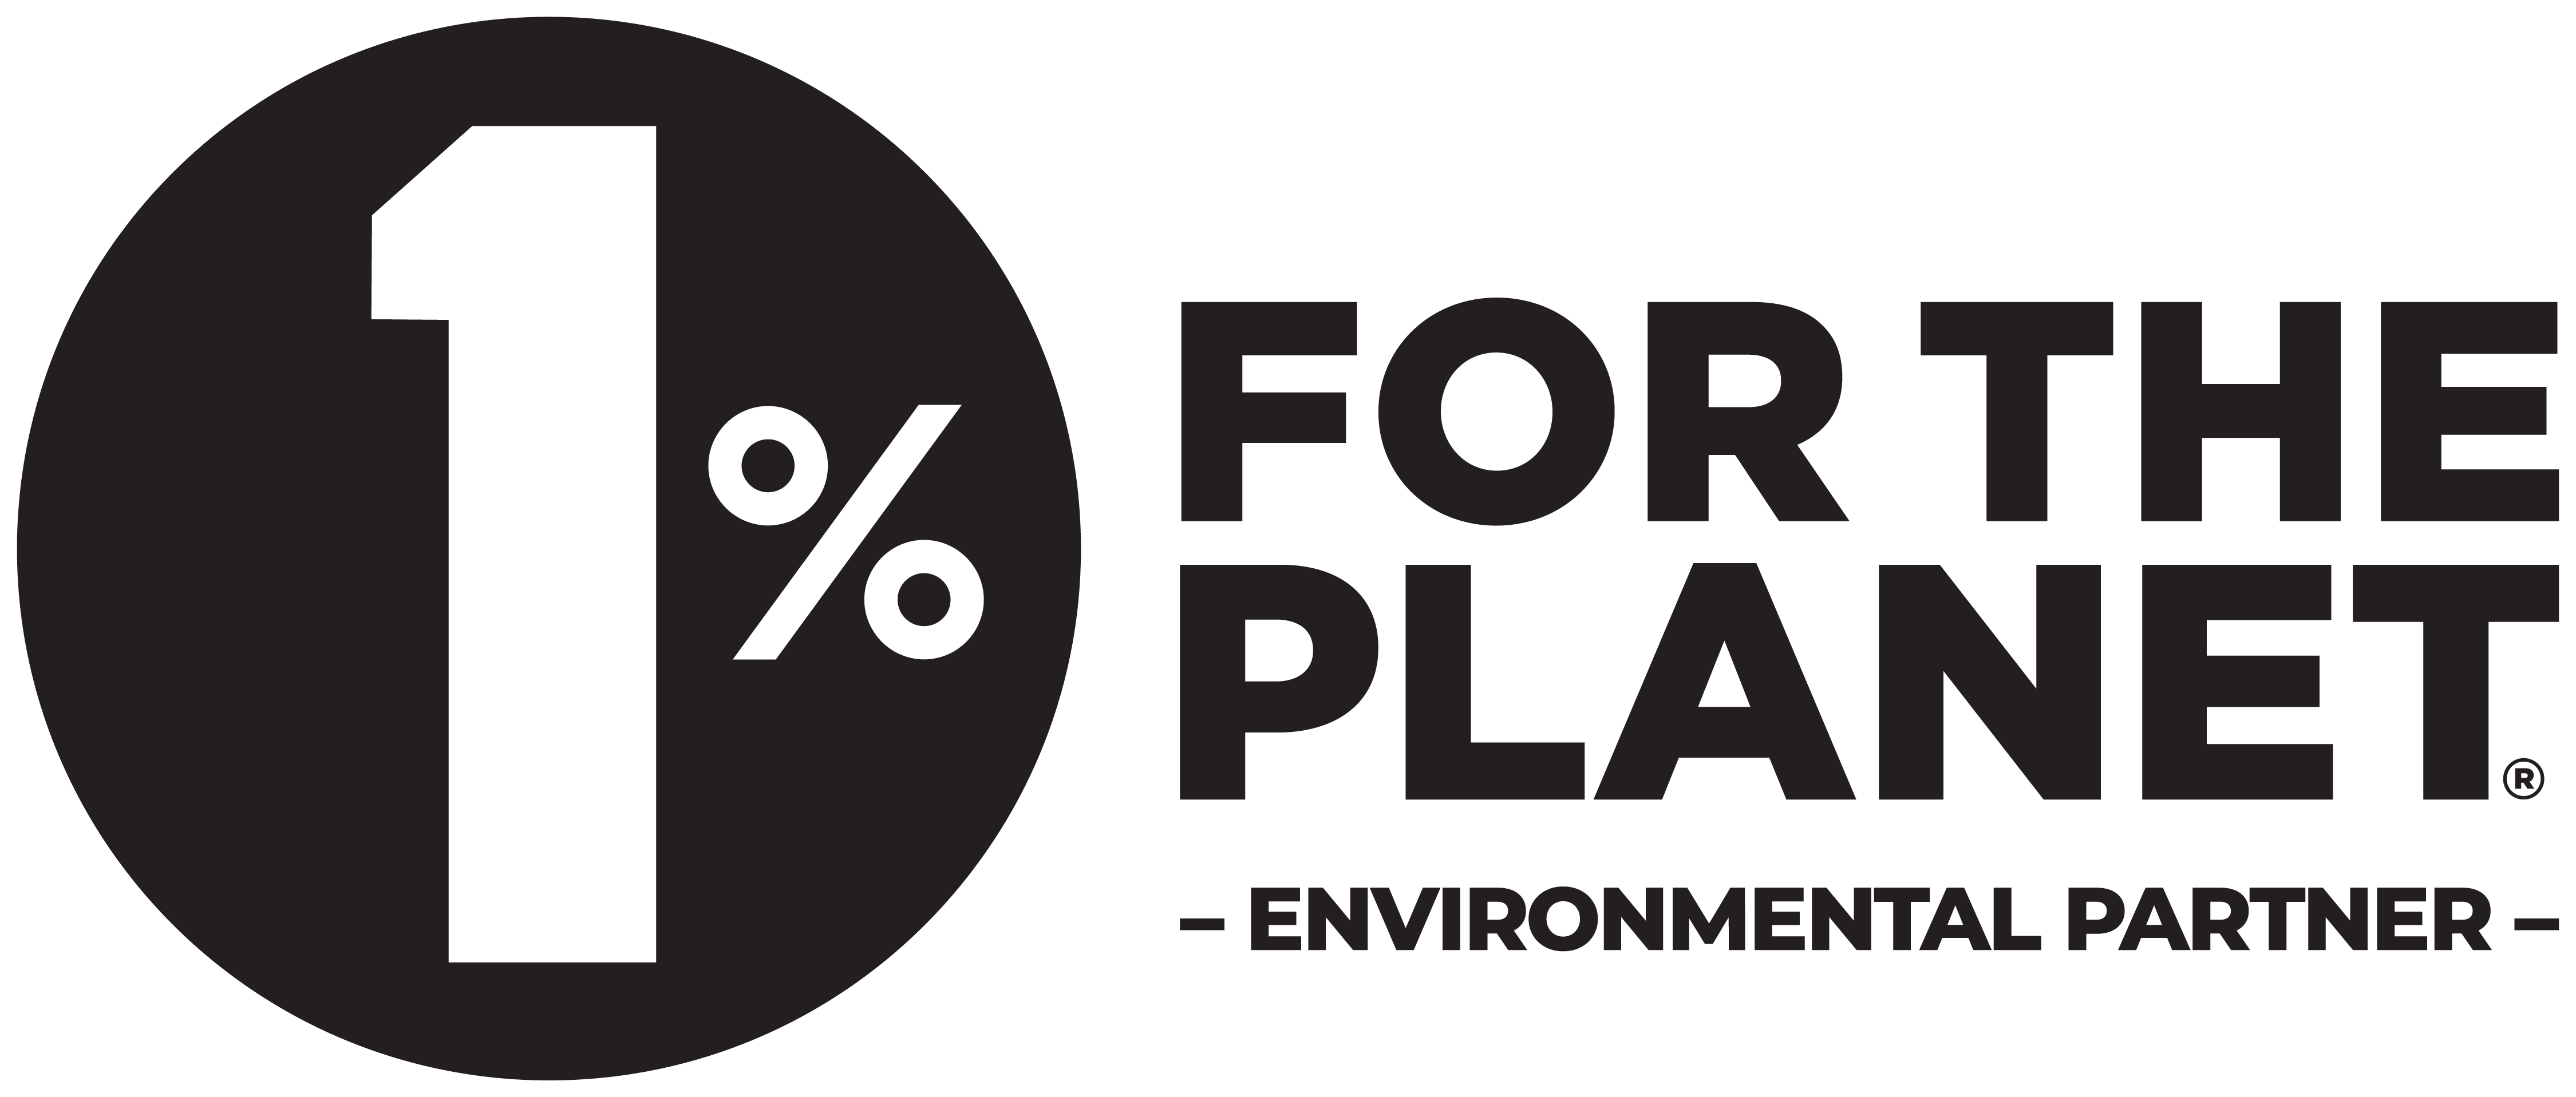 1% for the planet environmental partner